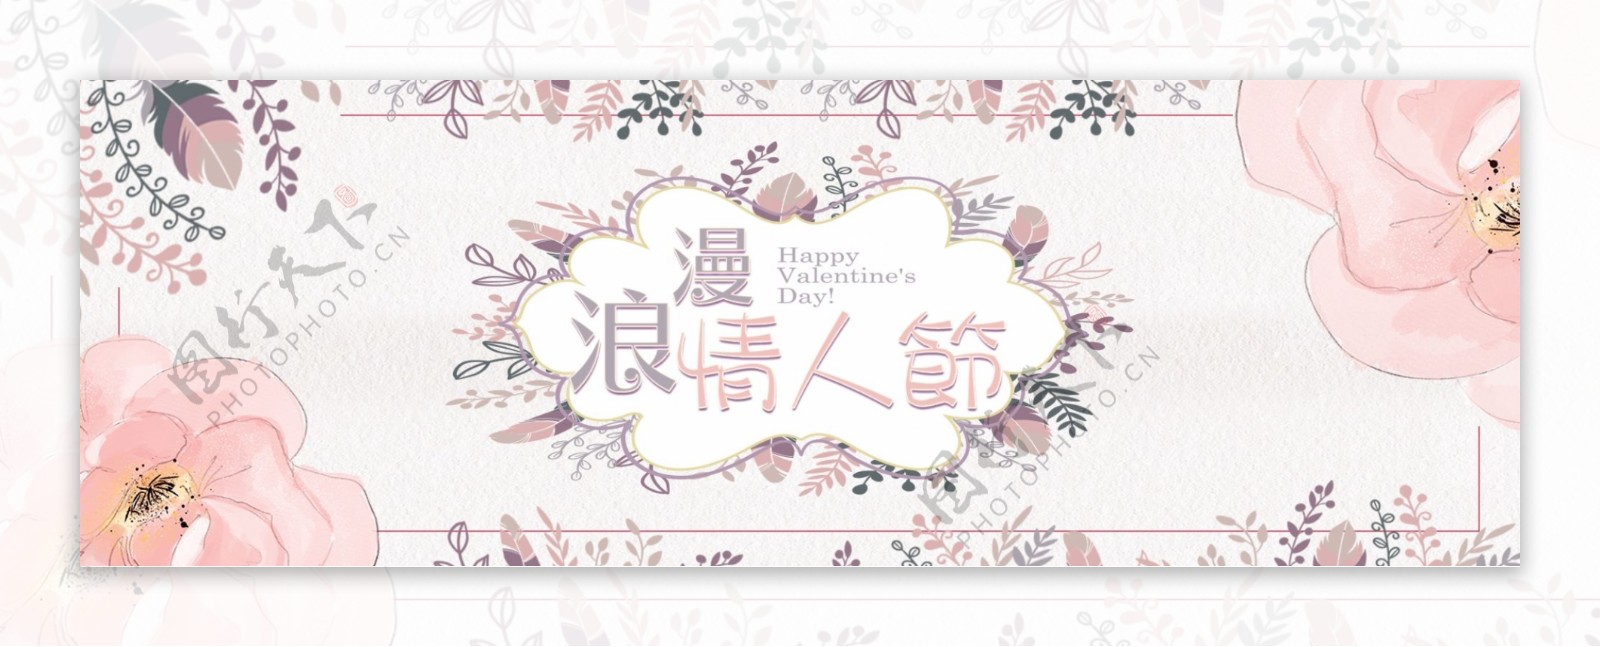 电商淘宝天猫服装女装七夕情人节促销海报banner模板设计